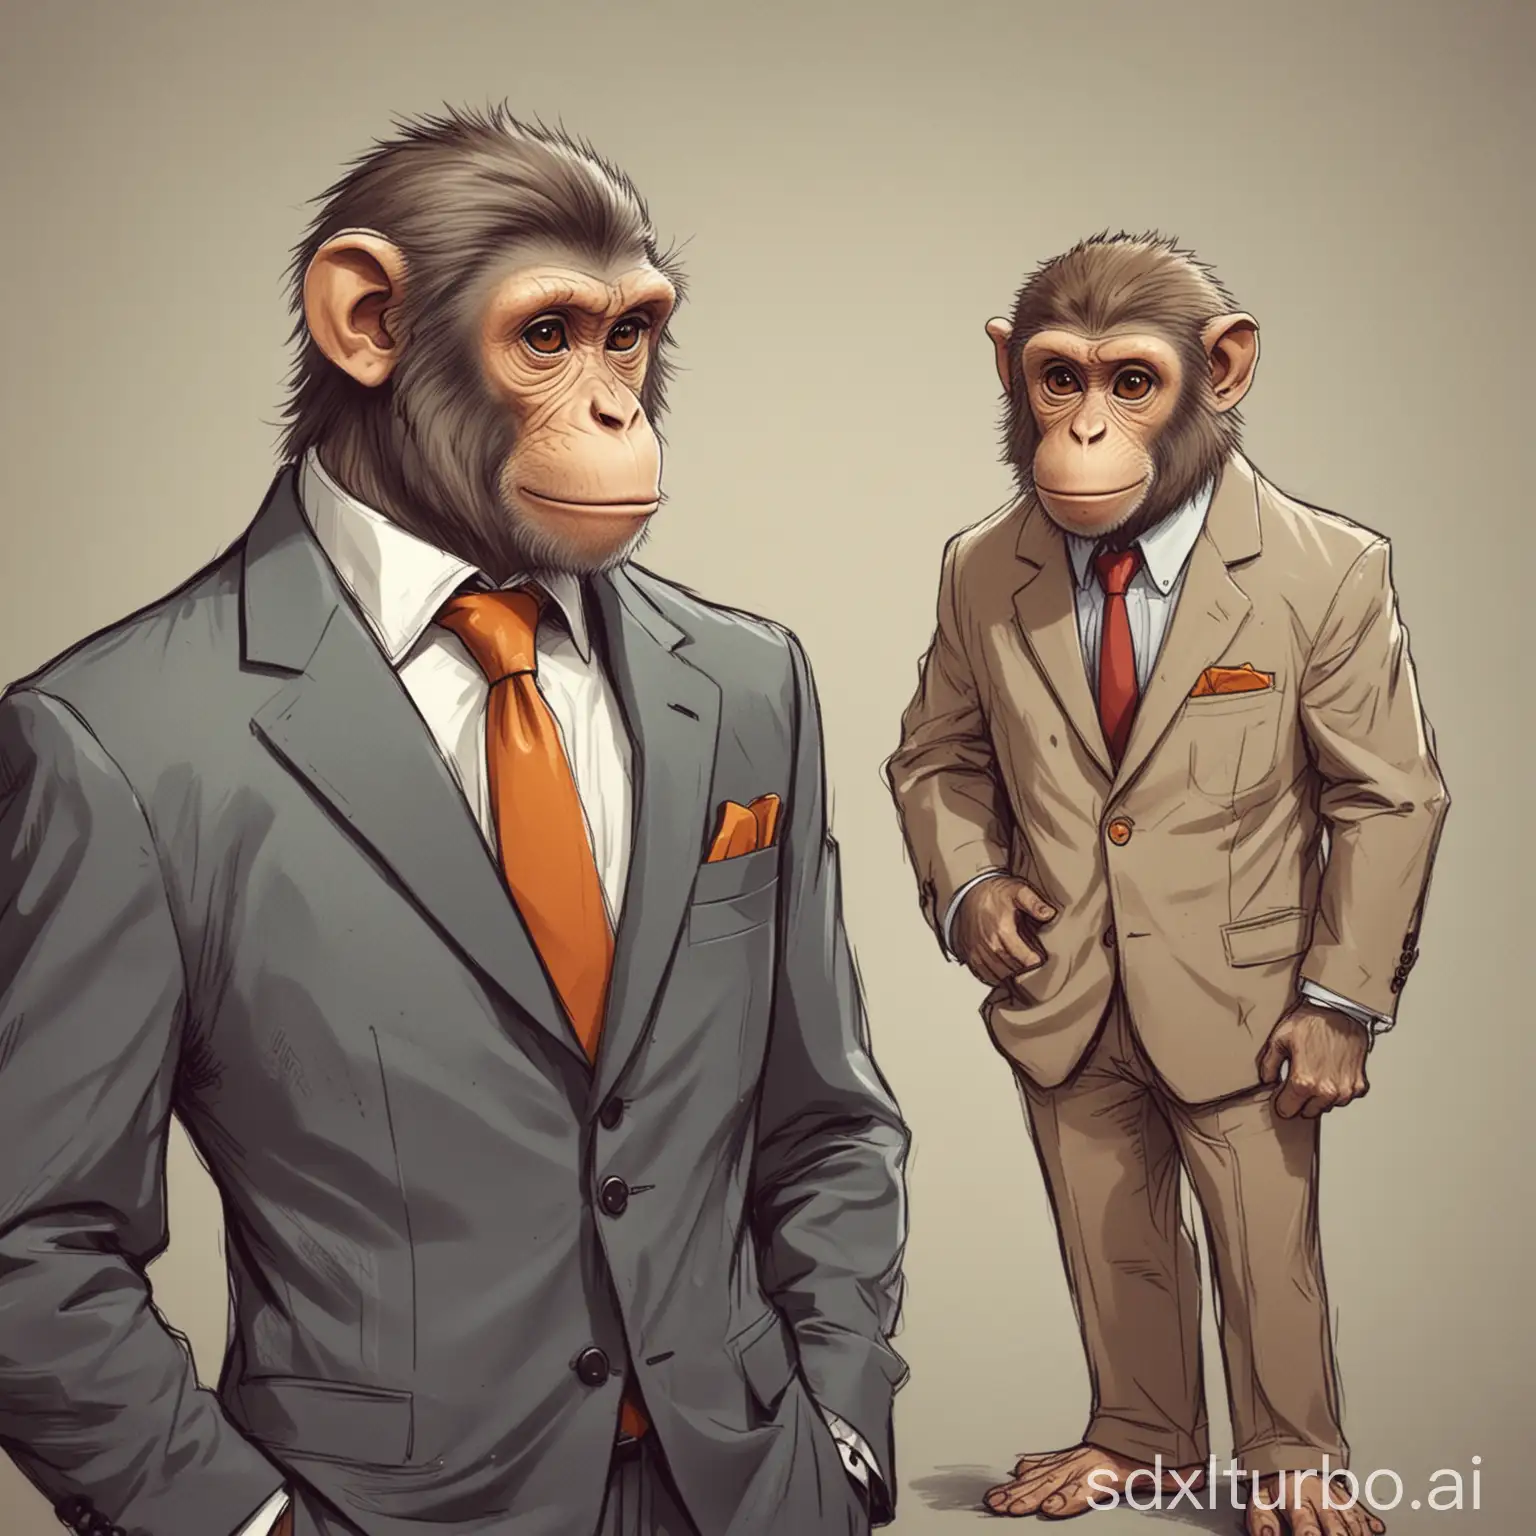 画一只猴子好奇的看着穿西装的男人，漫画风格